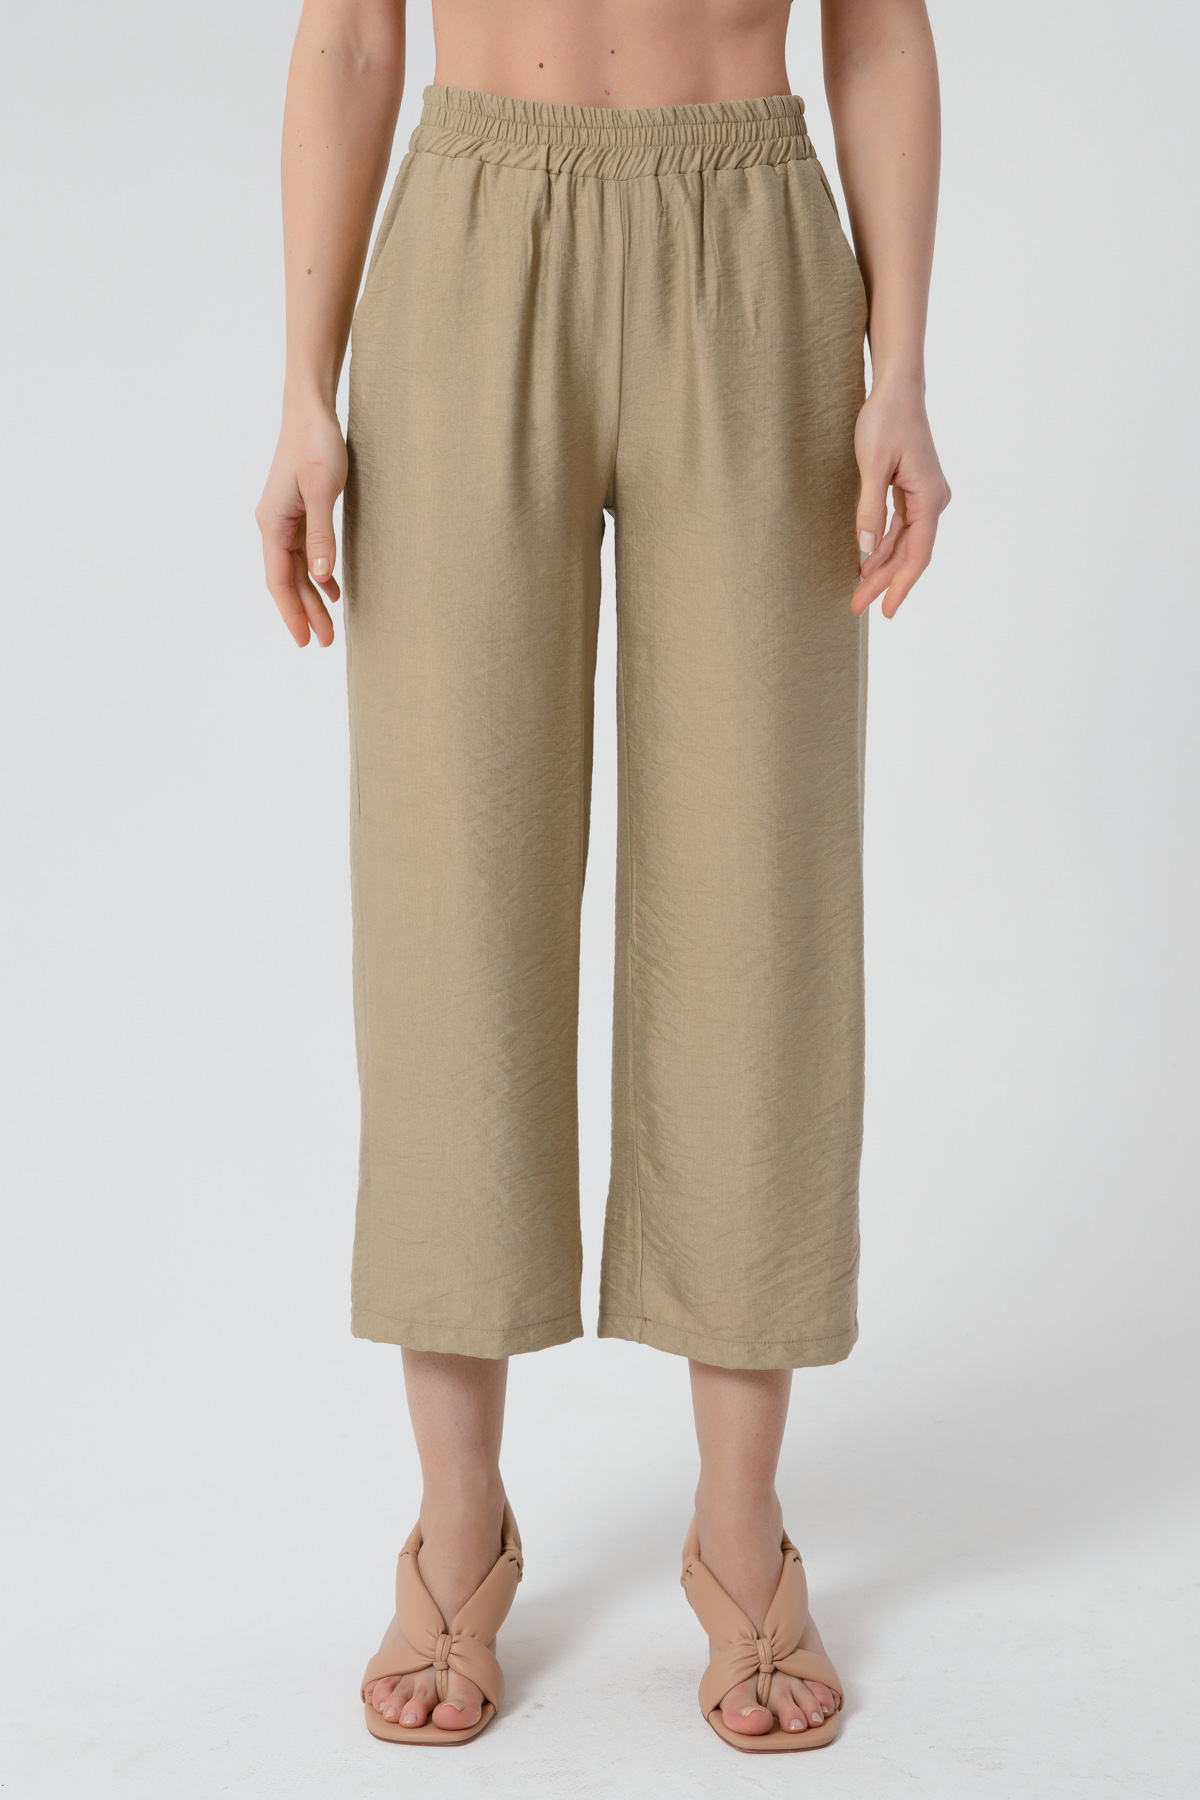 Women's Beige Linen Pants